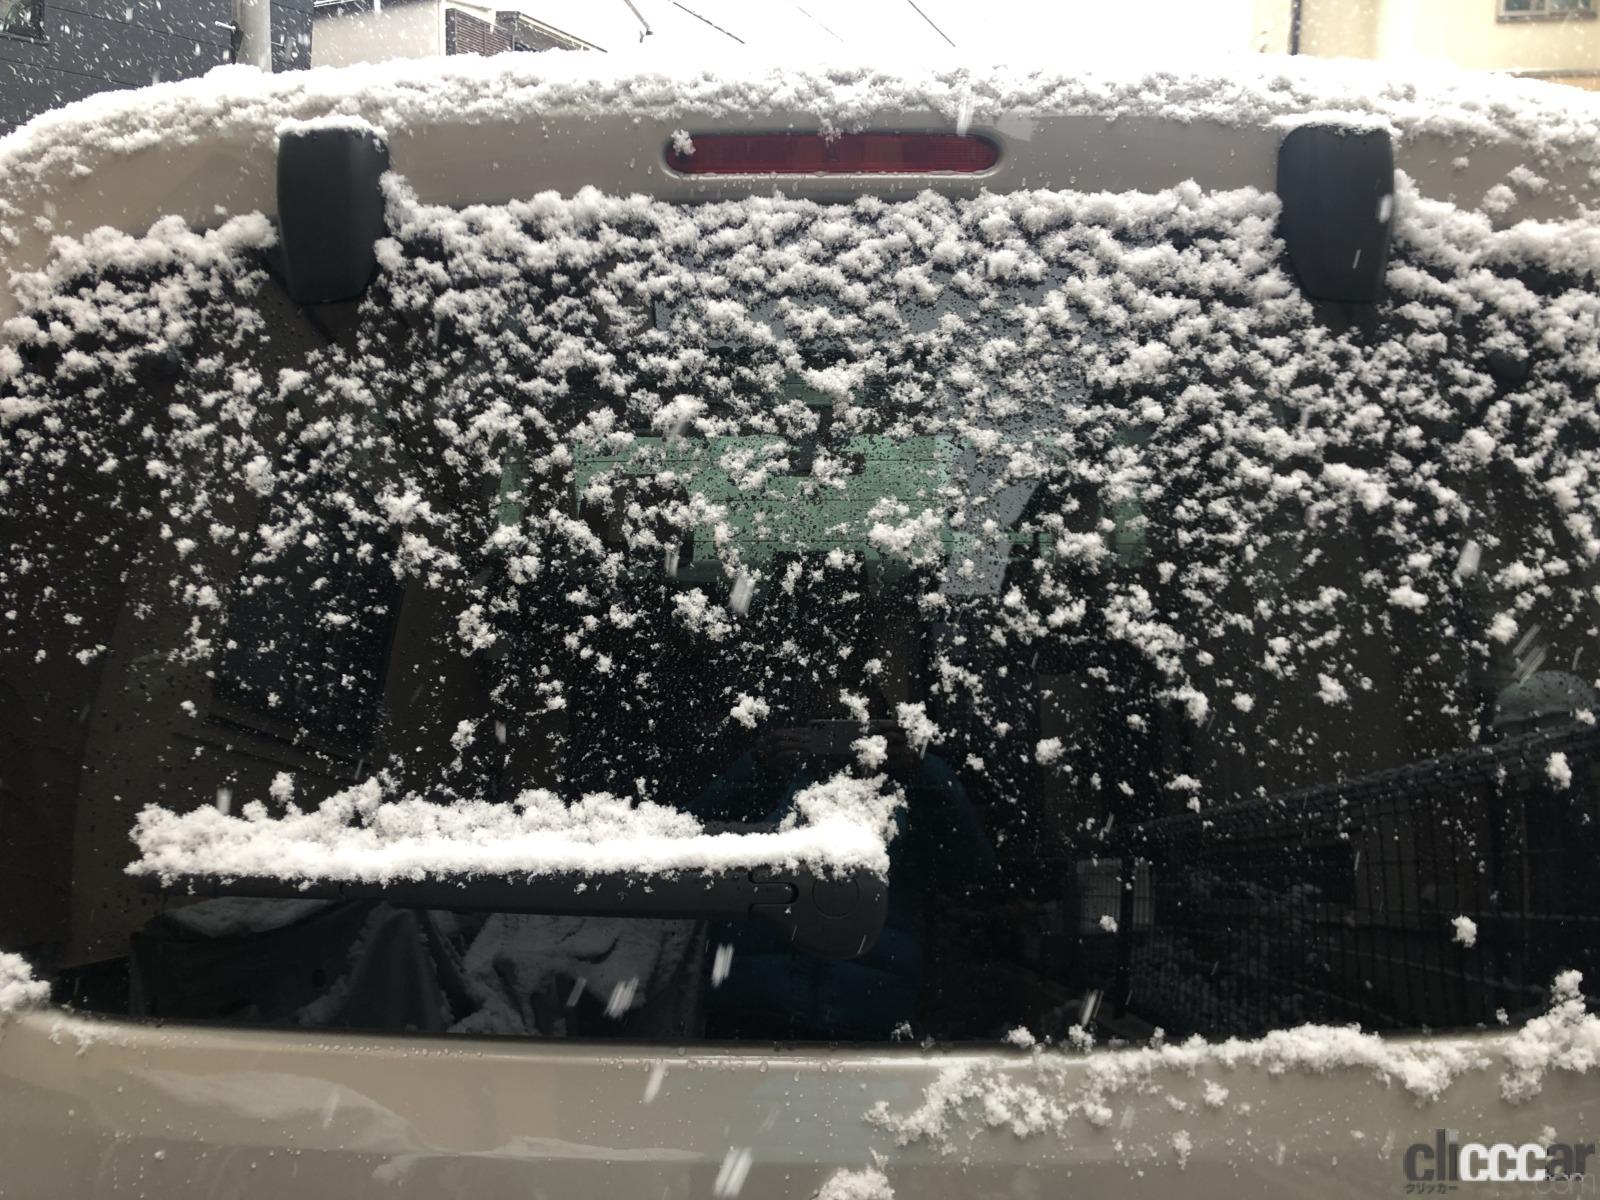 リヤワイパーにも雪は積もります 画像 雪の日に駐車するときはワイパーを立てたほうがいい 立てないほうがいい場合は クルマ豆知識 22年版 Clicccar Com